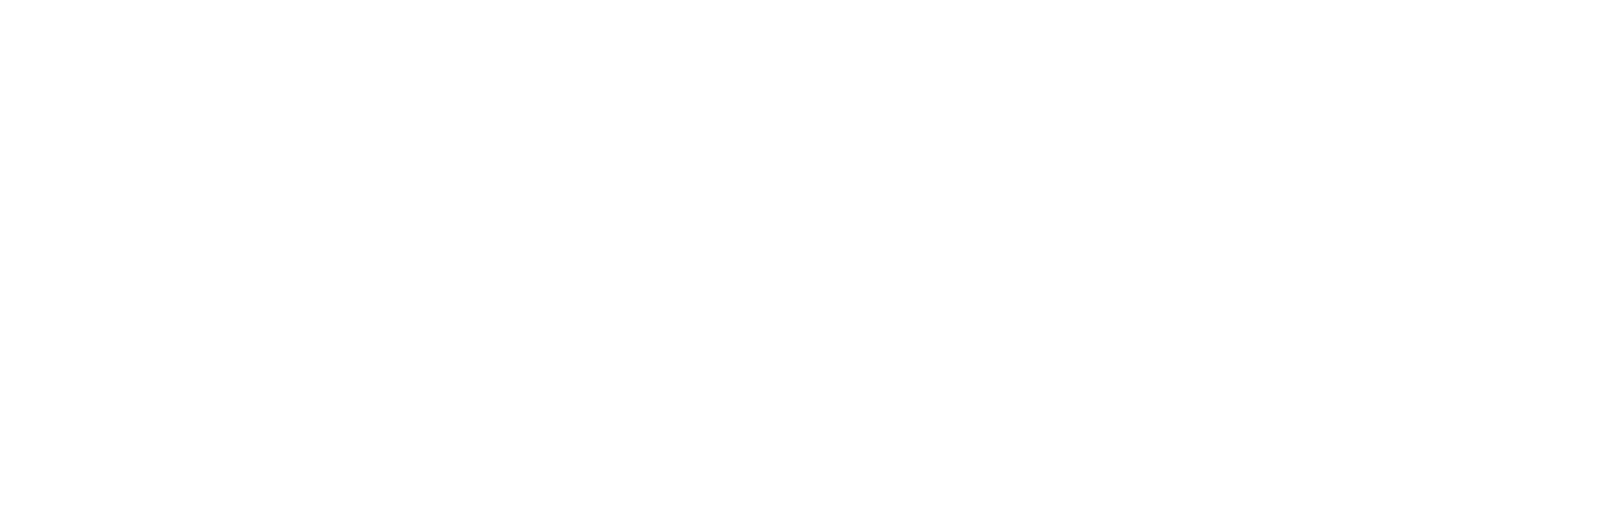 TruSculptiD-logo